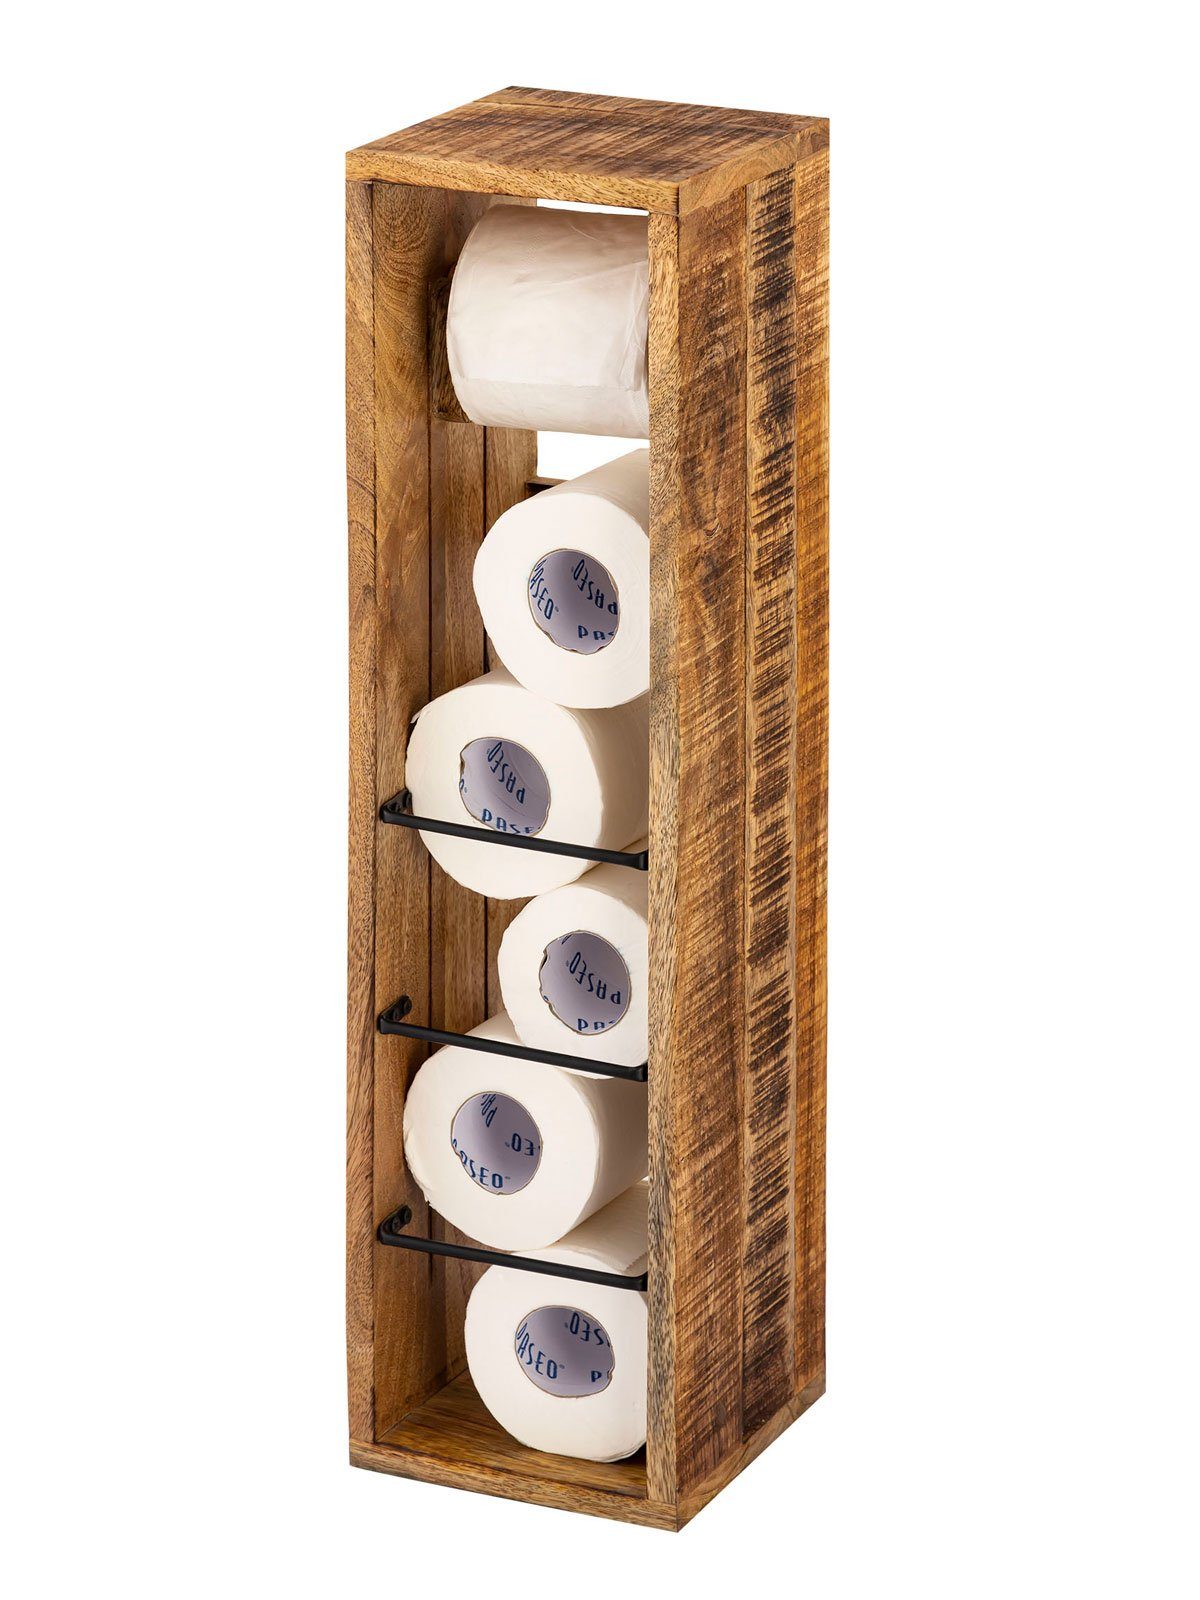 Casamia Toilettenpapierhalter Klopapierhalter Toilettenpapierhalter Holz 17x17 H 65 cm Klorollenhalt